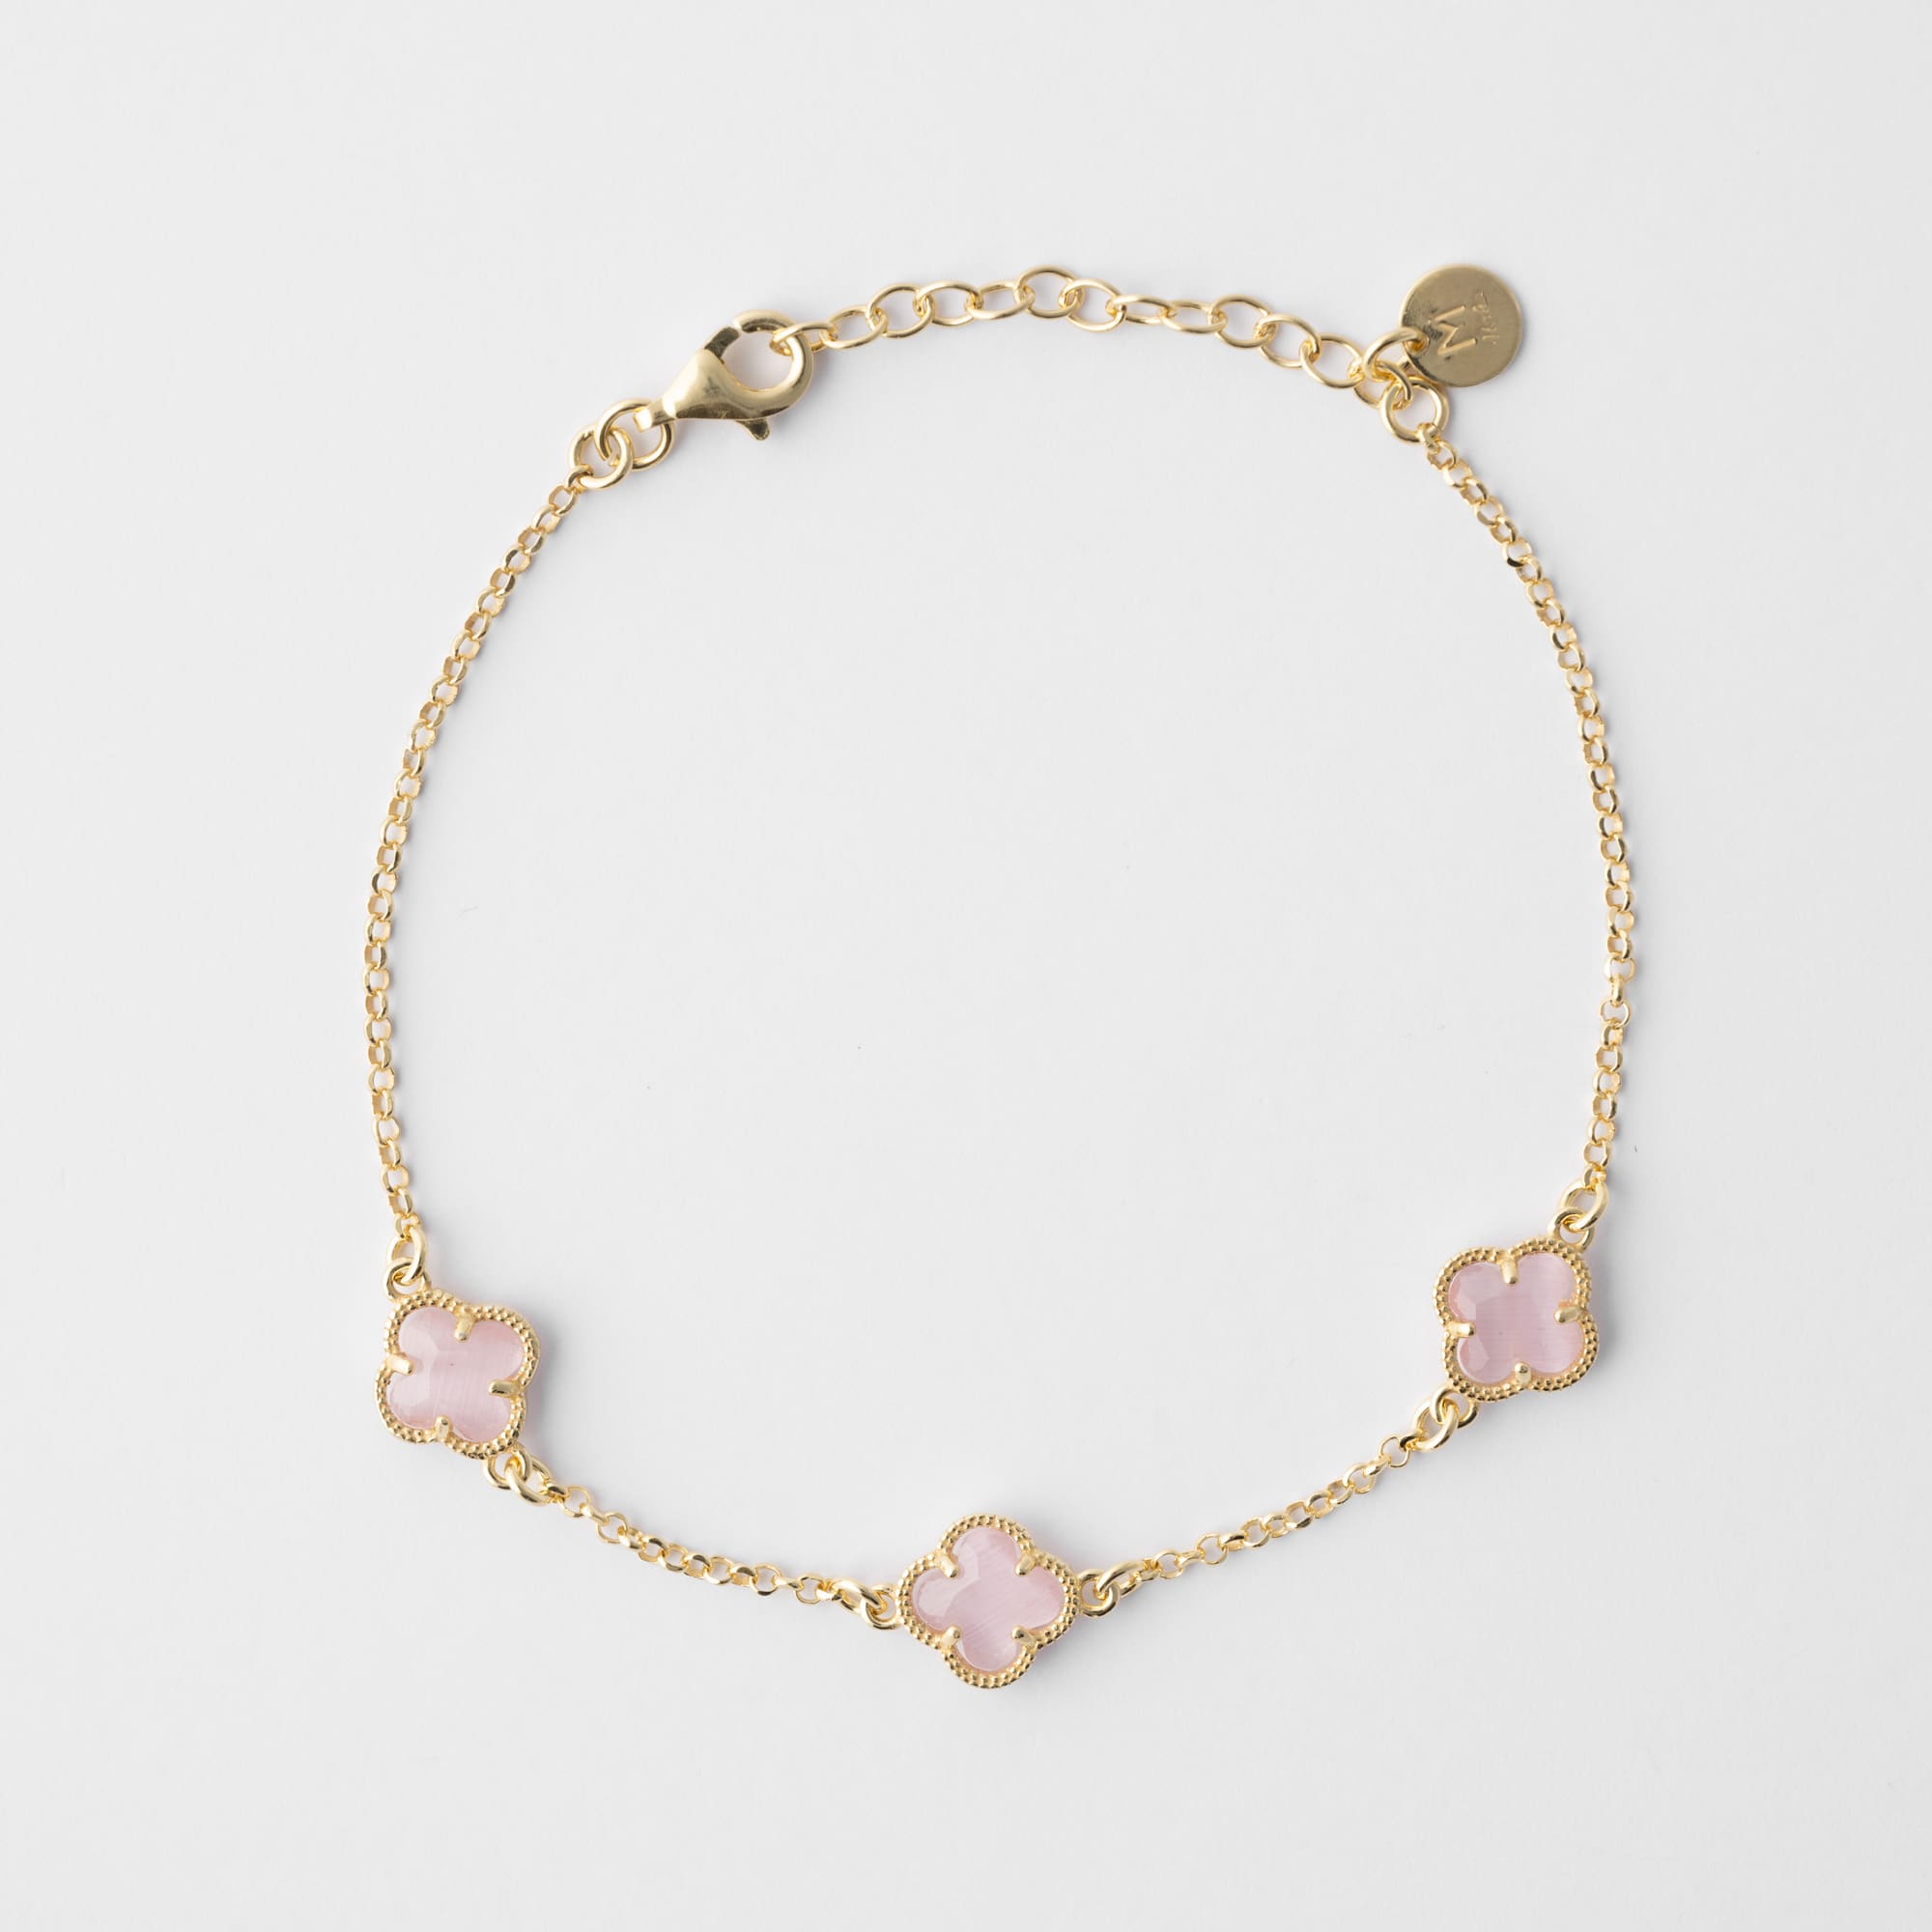 CLOVERLEAF Silver Bracelet with Pink Quartz